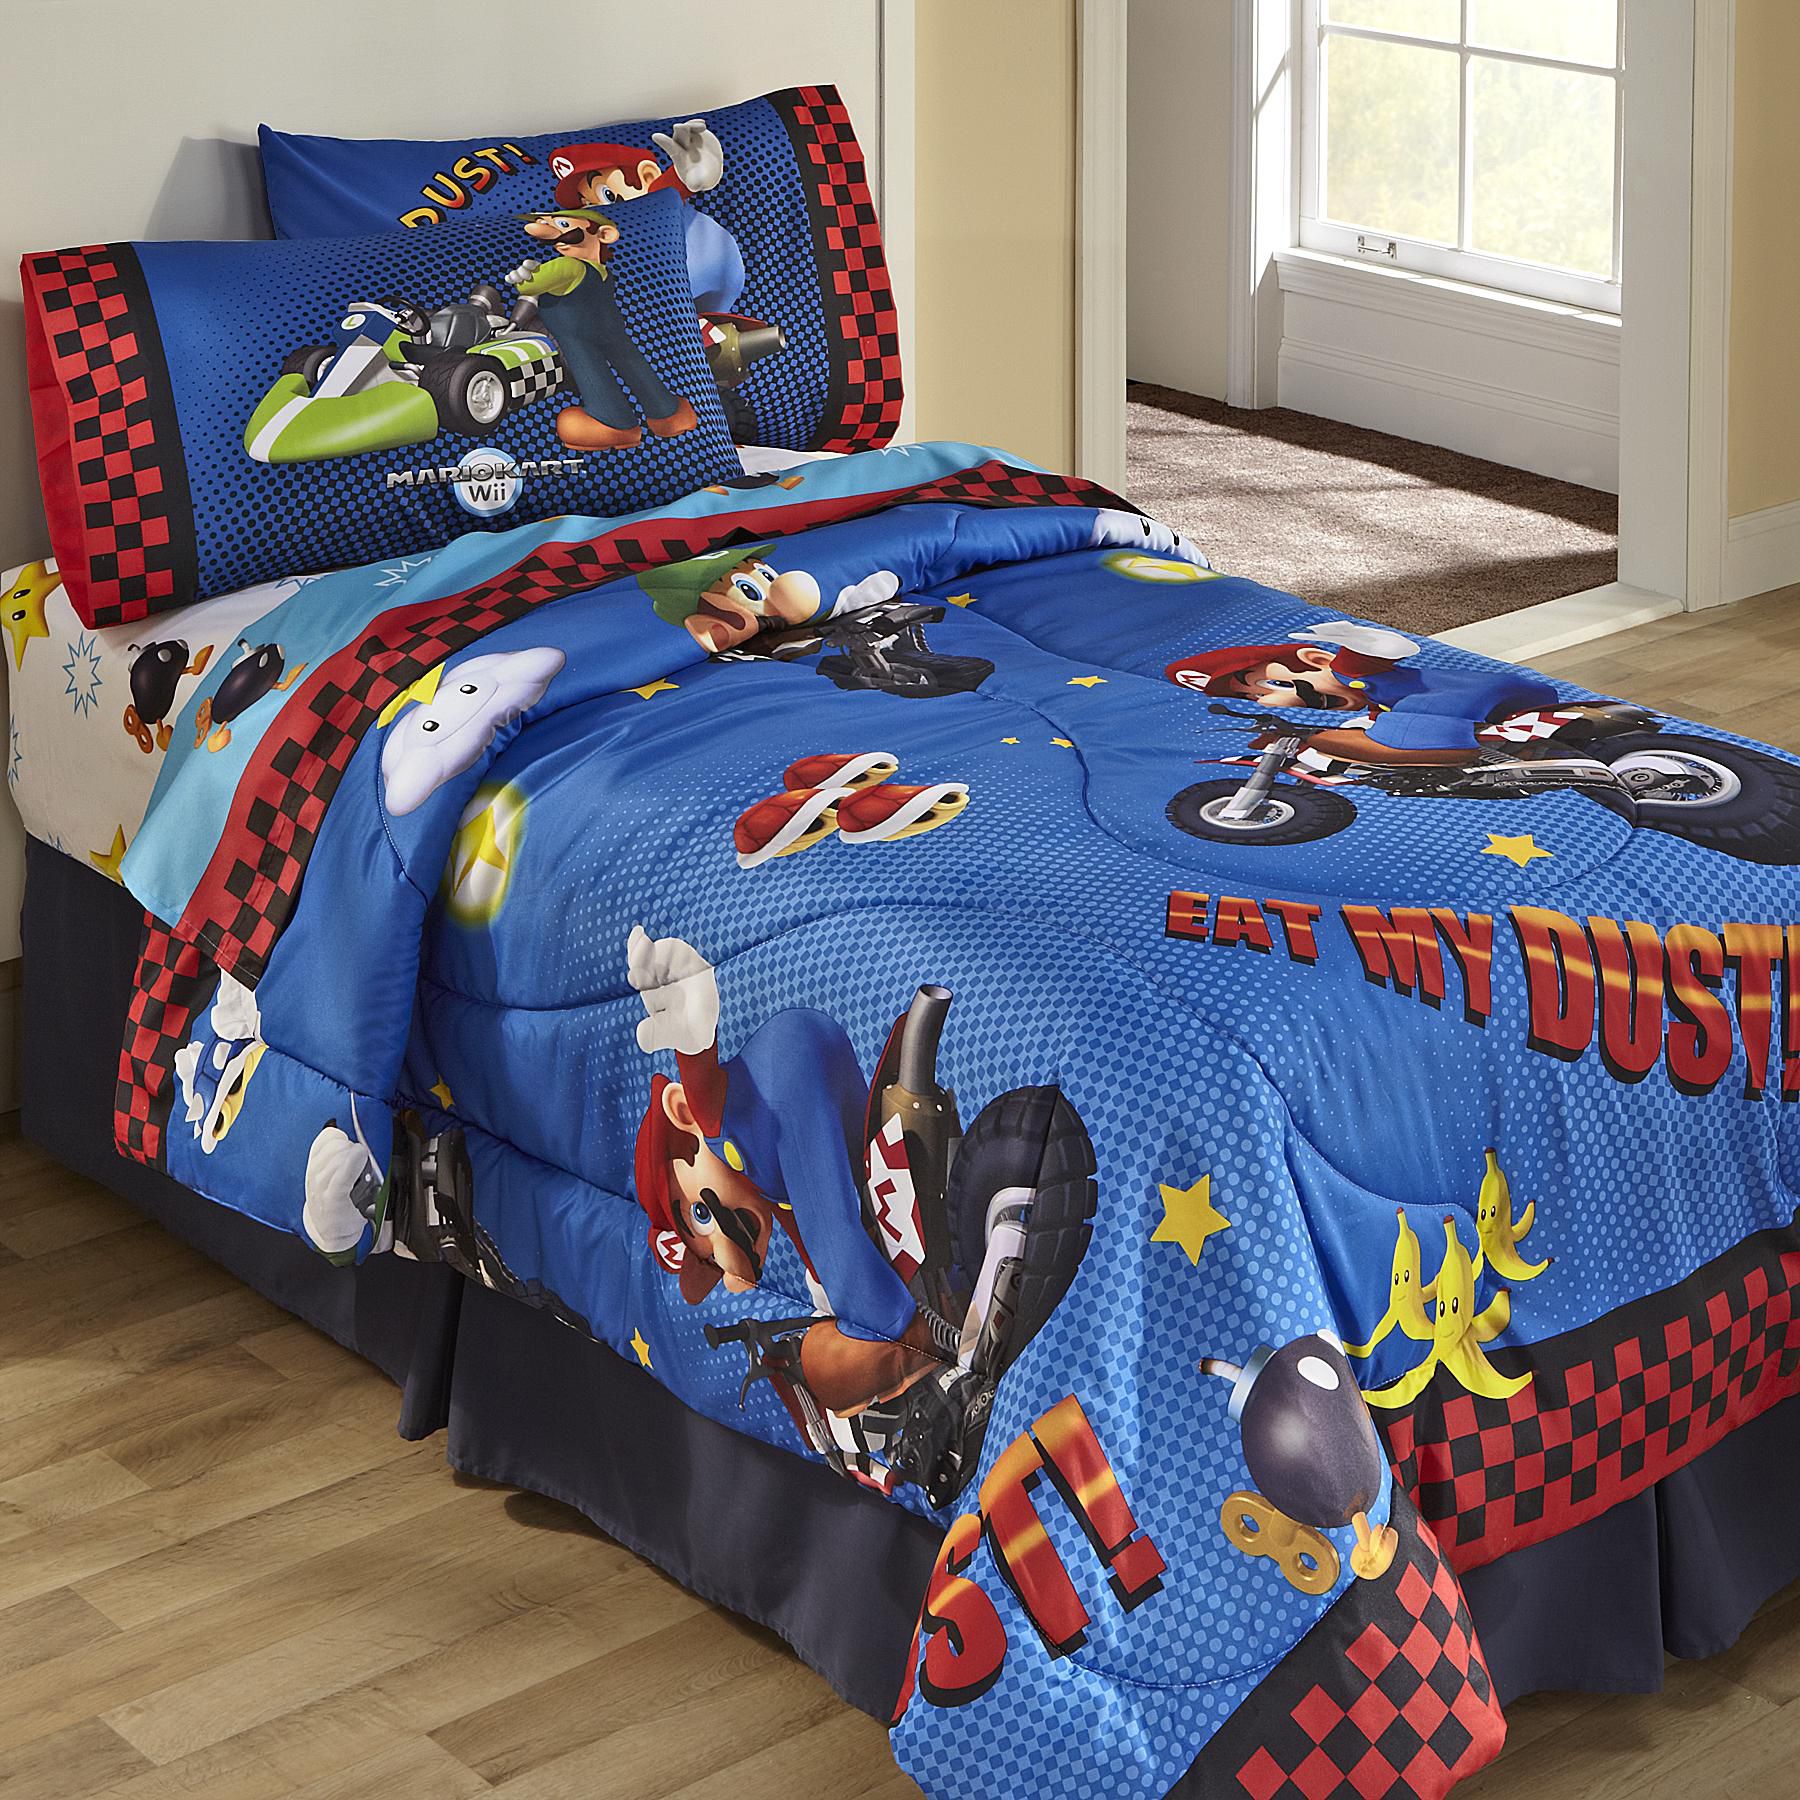 Nintendo Bedding, Twin Bed Blanket